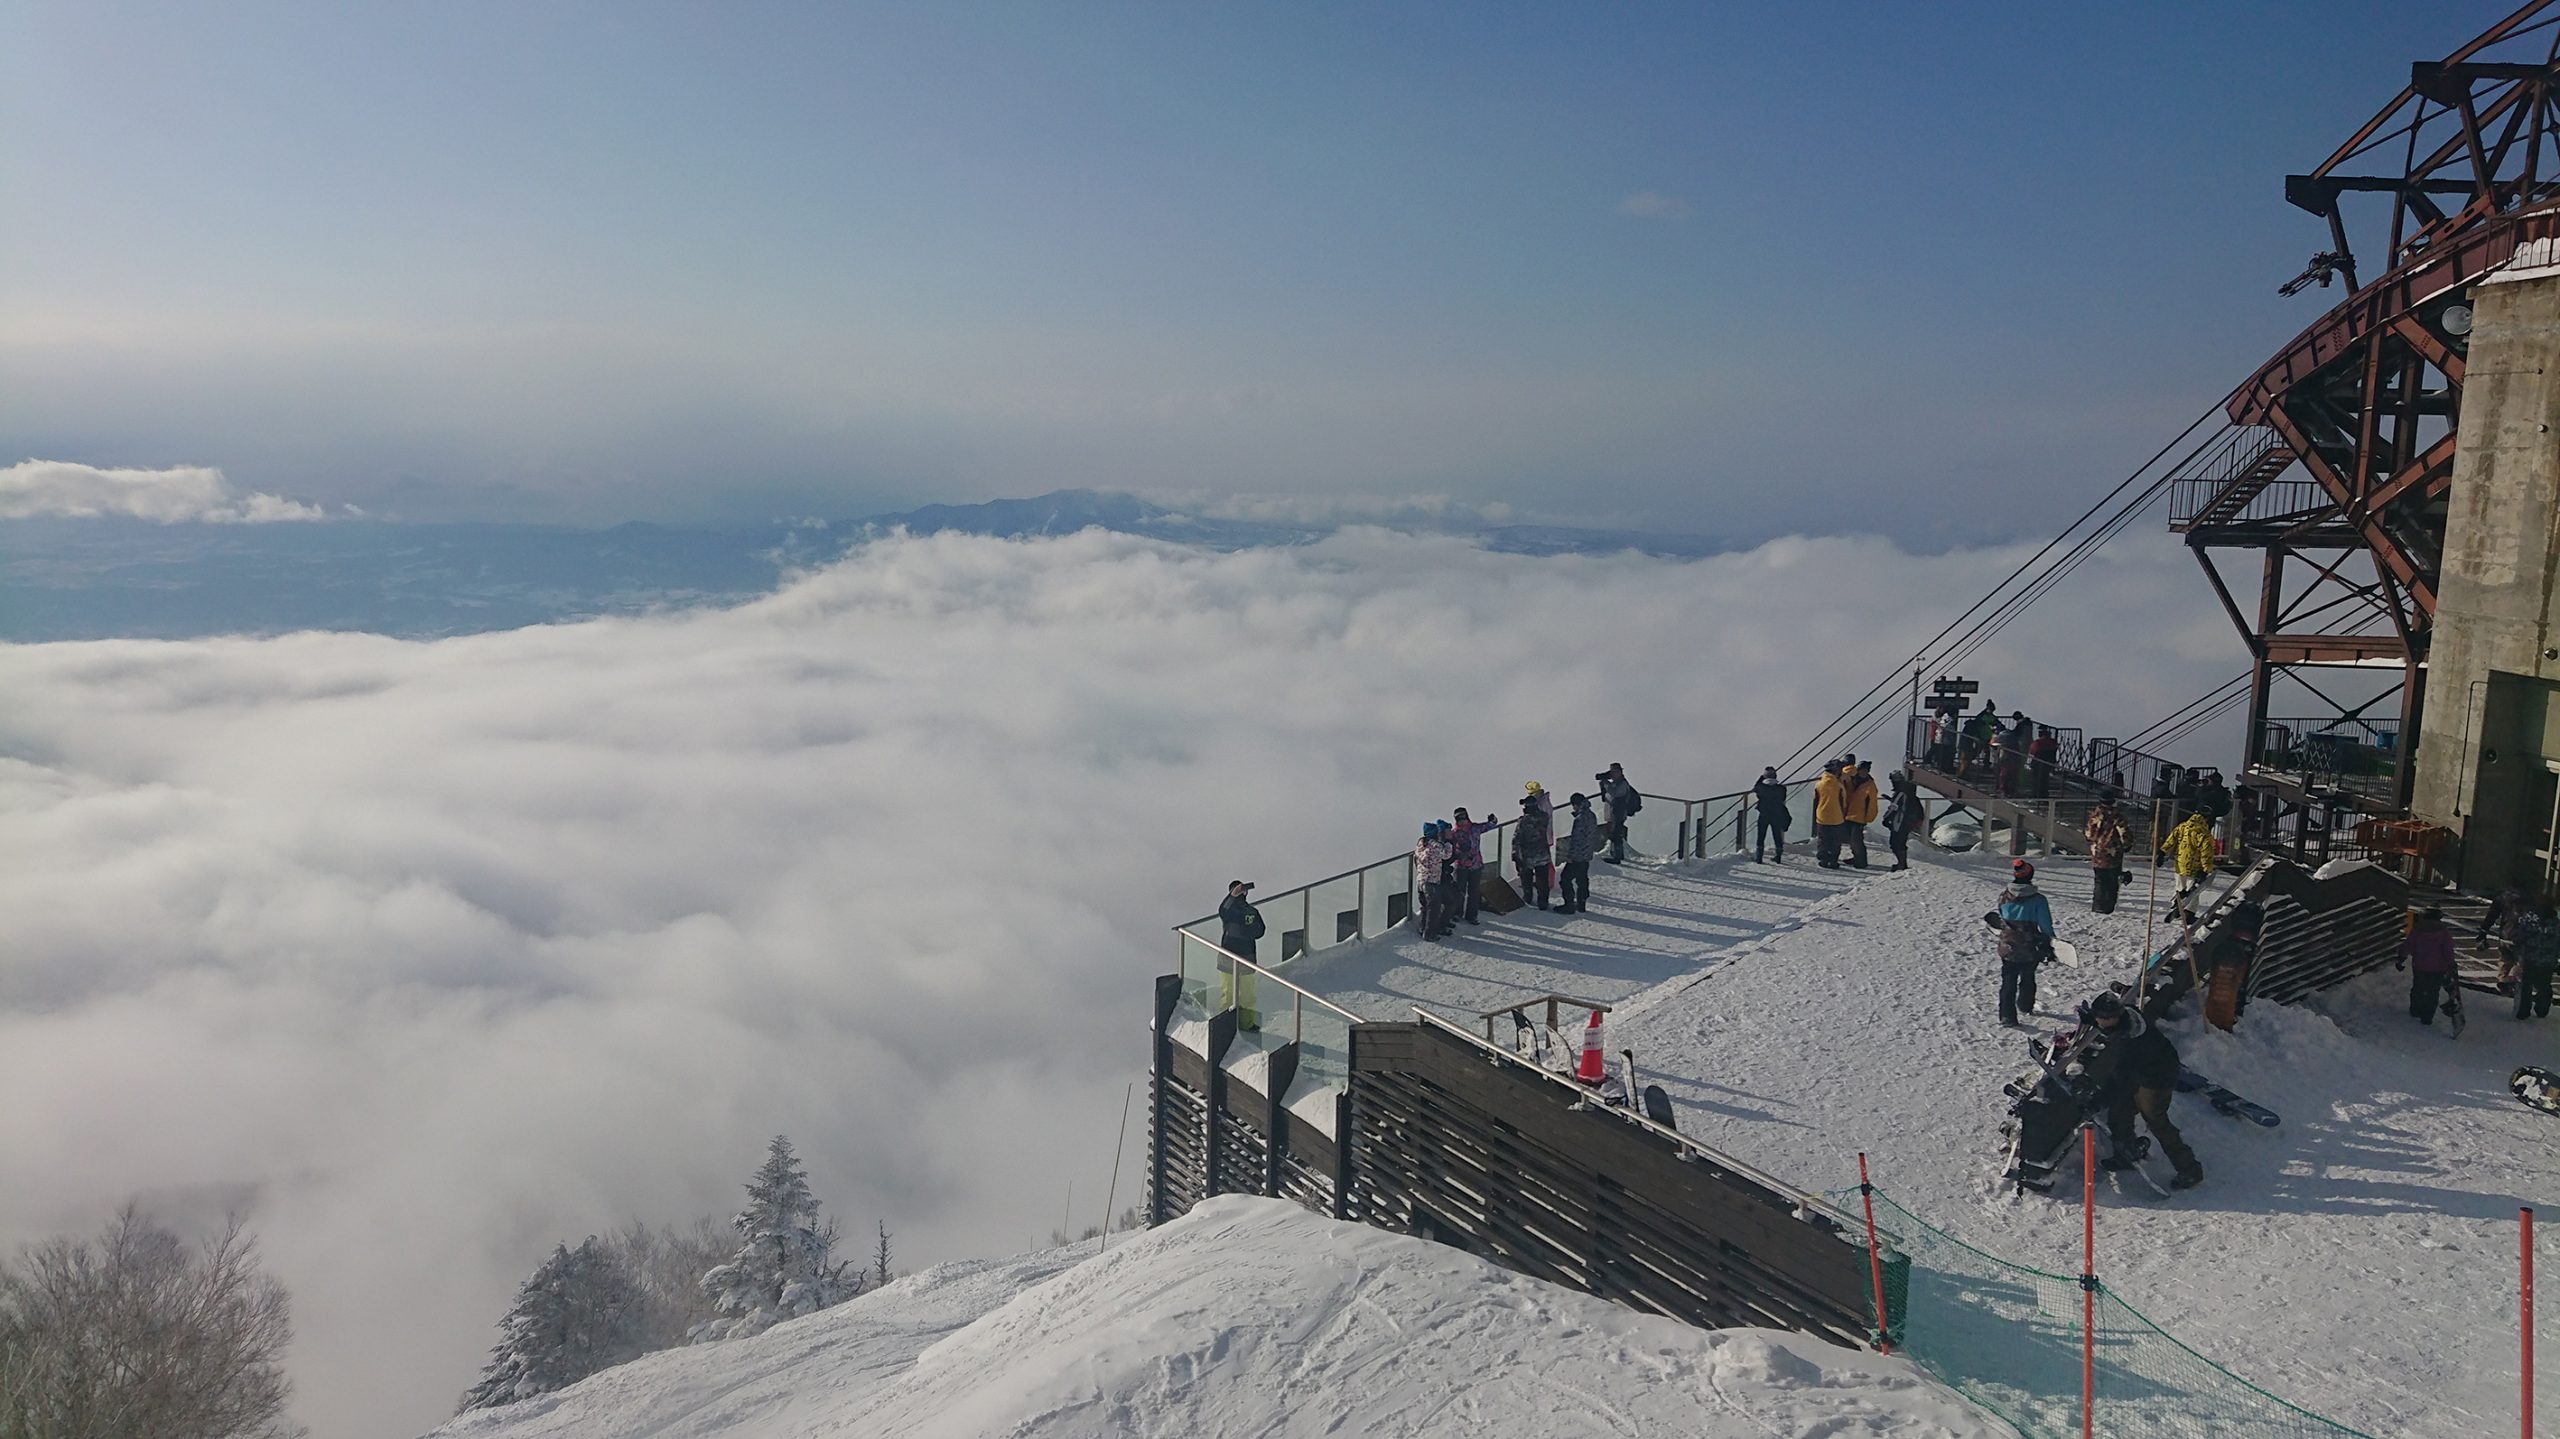 竜王スキーパークの早割ウインターシーズン券 Snow Angel Mag スノーエンジェルマガジン 公式サイト